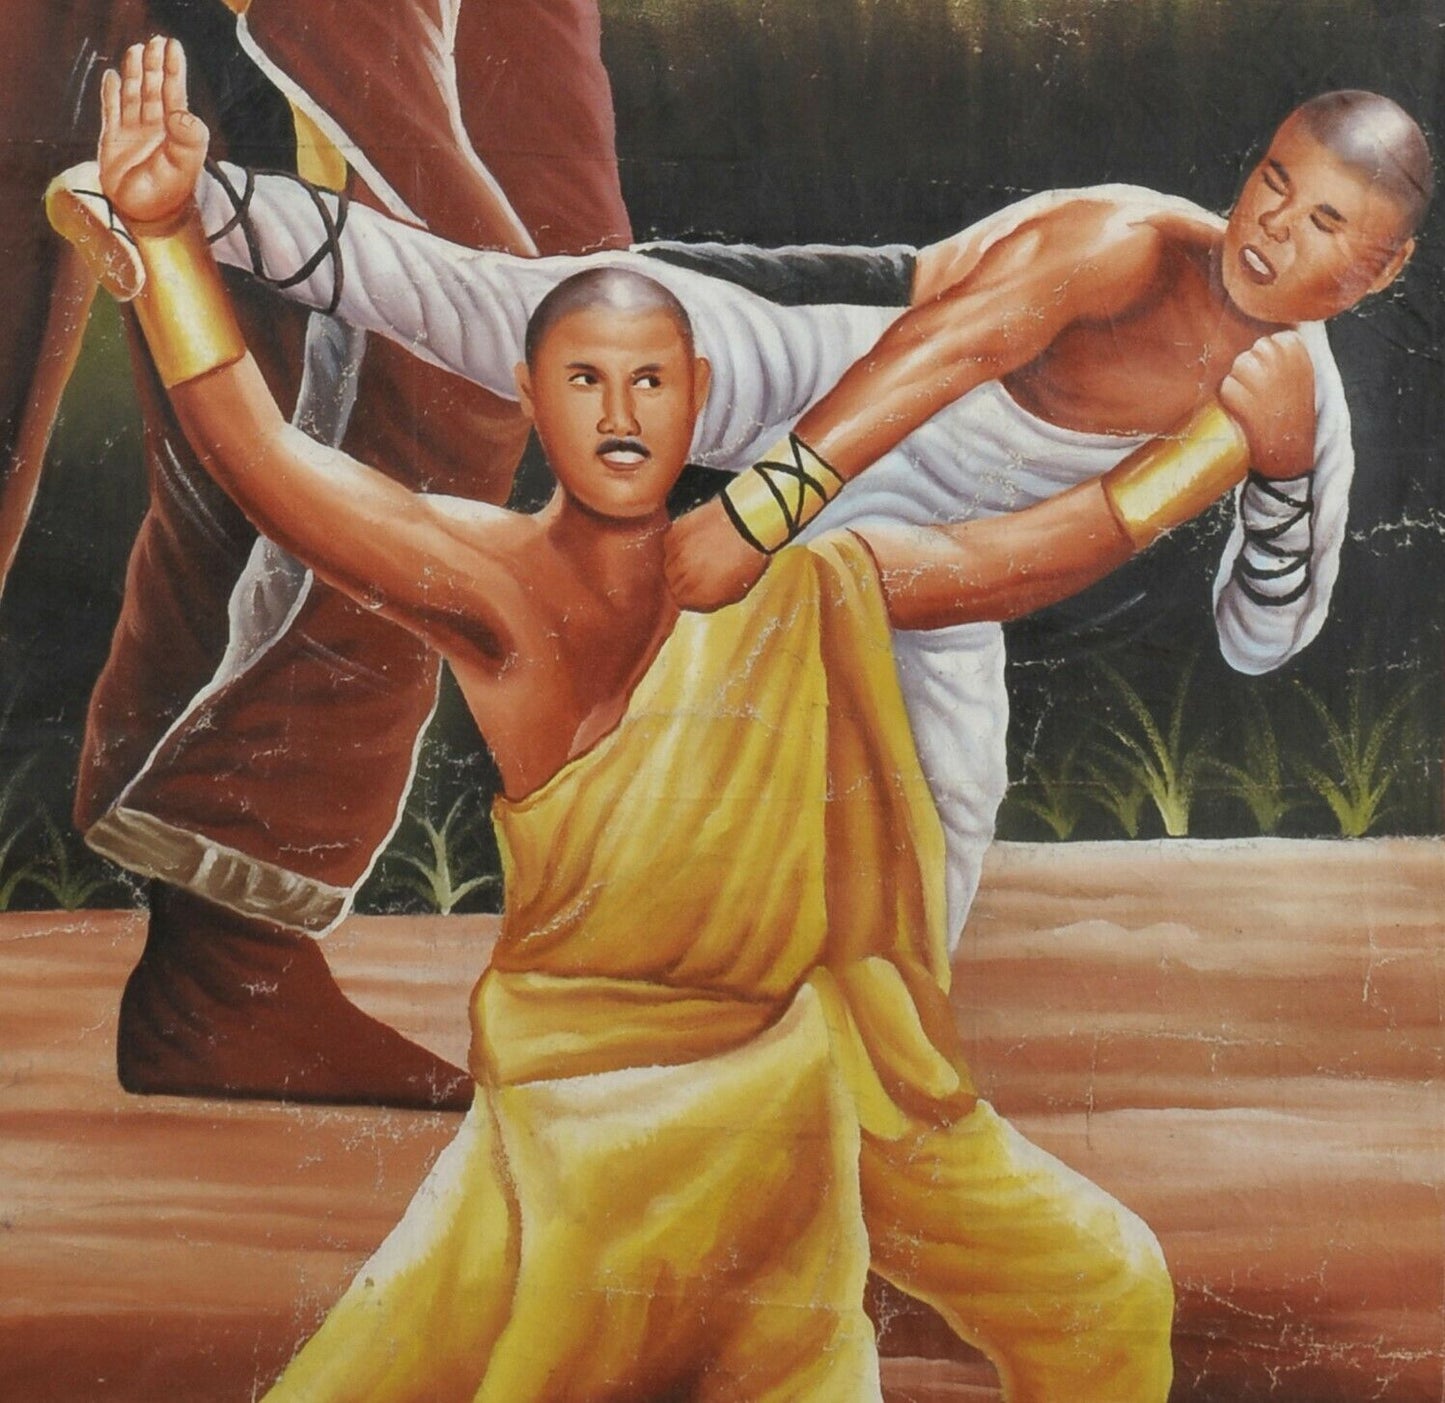 Постер фильма Африканское кино настенное искусство ручной росписи Гана SHAOLIN VRS LAMA - Tribalgh